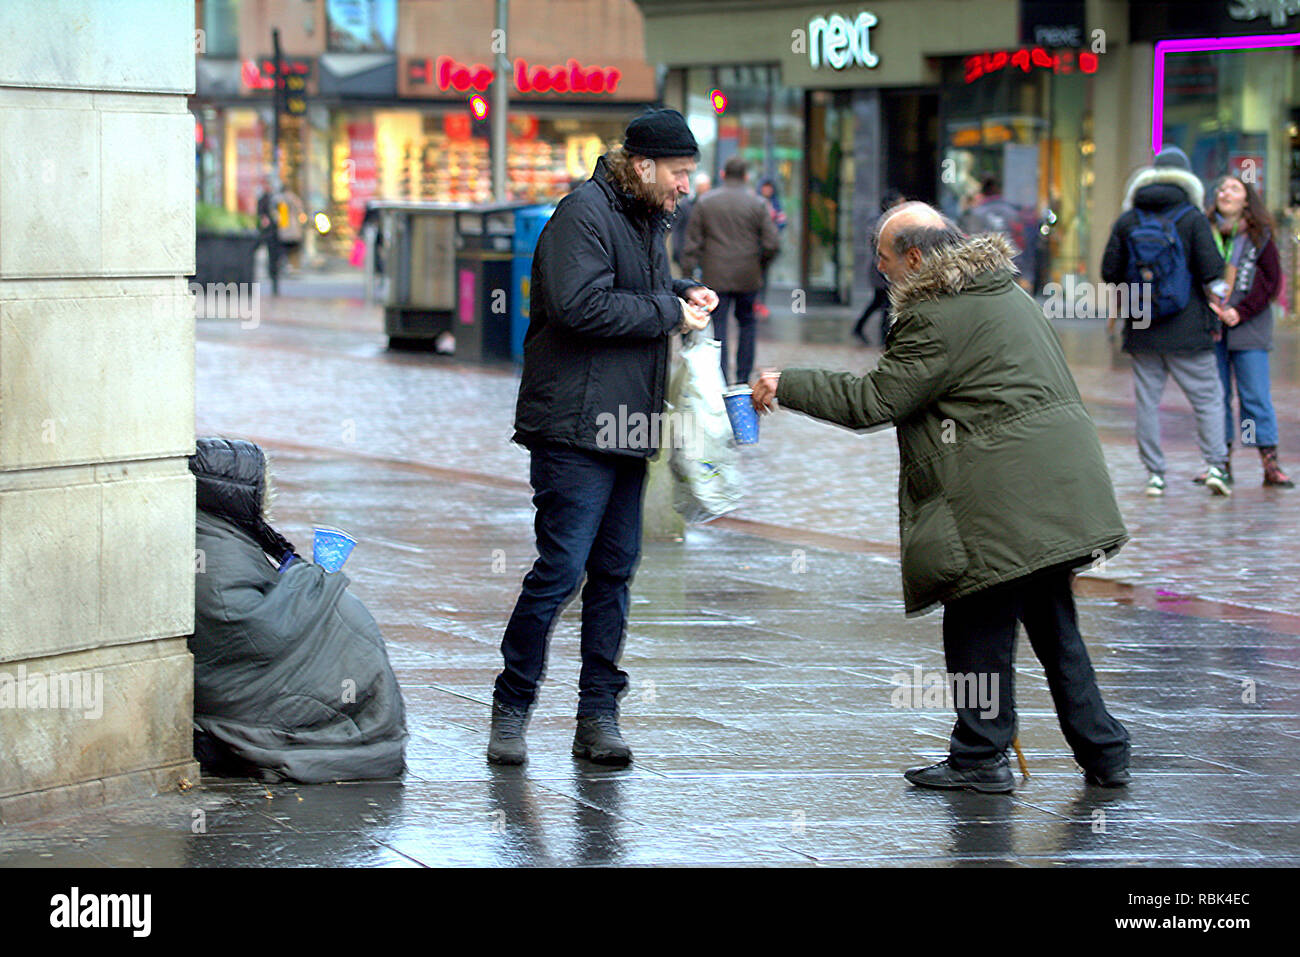 Obdachlosen armen Person Betteln nicht identifizierbare auf dem nassen Argyle Street Einkaufsviertel Glasgow Schottland Großbritannien Stockfoto